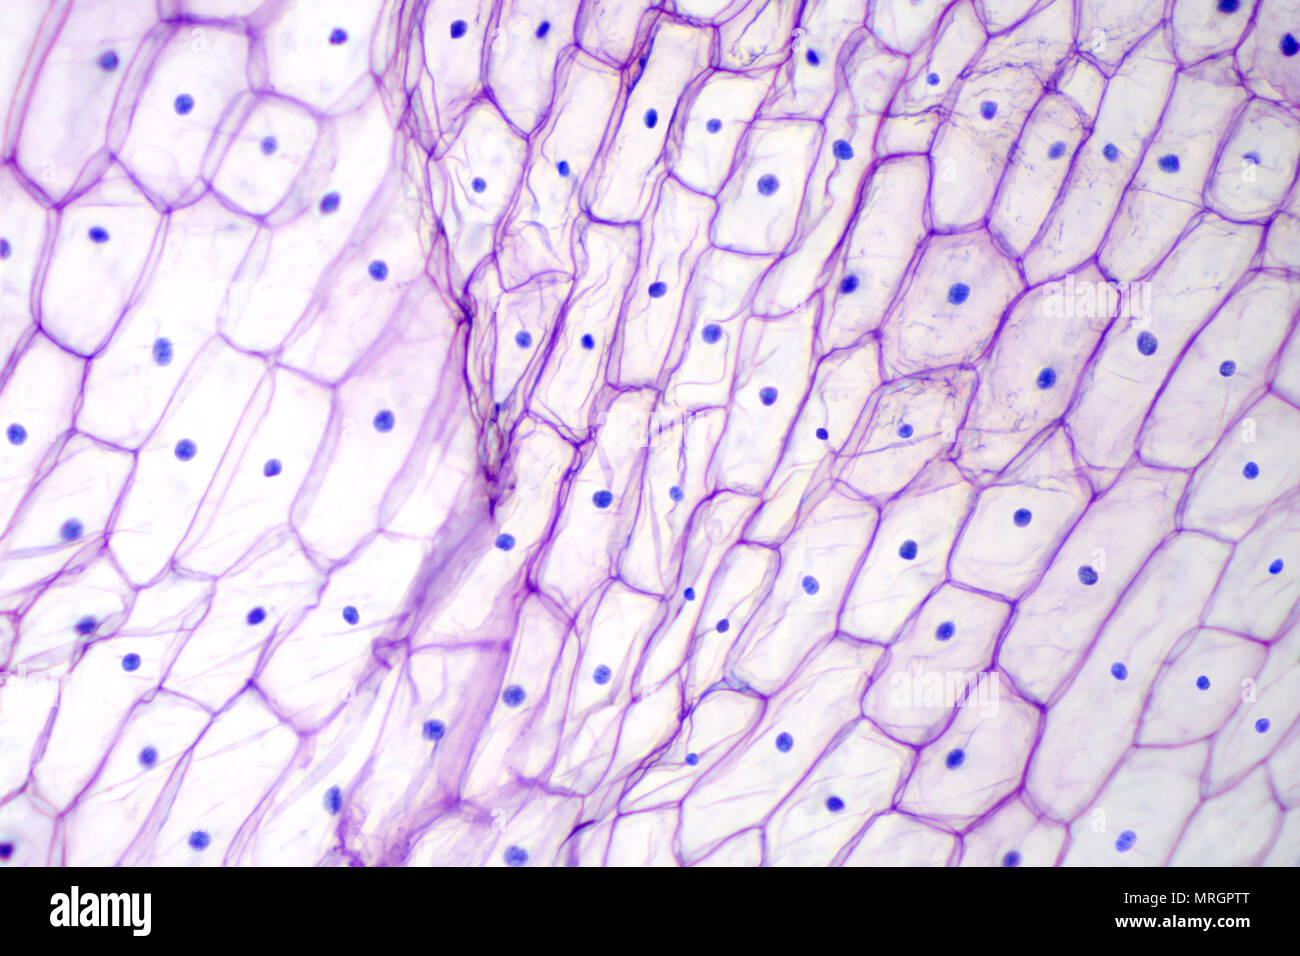 Onion epidermide sotto microscopio luminoso. Dal colore rosso porpora, grandi cellule epidermiche di una cipolla, Allium cepa, in un singolo strato. Foto. Foto Stock